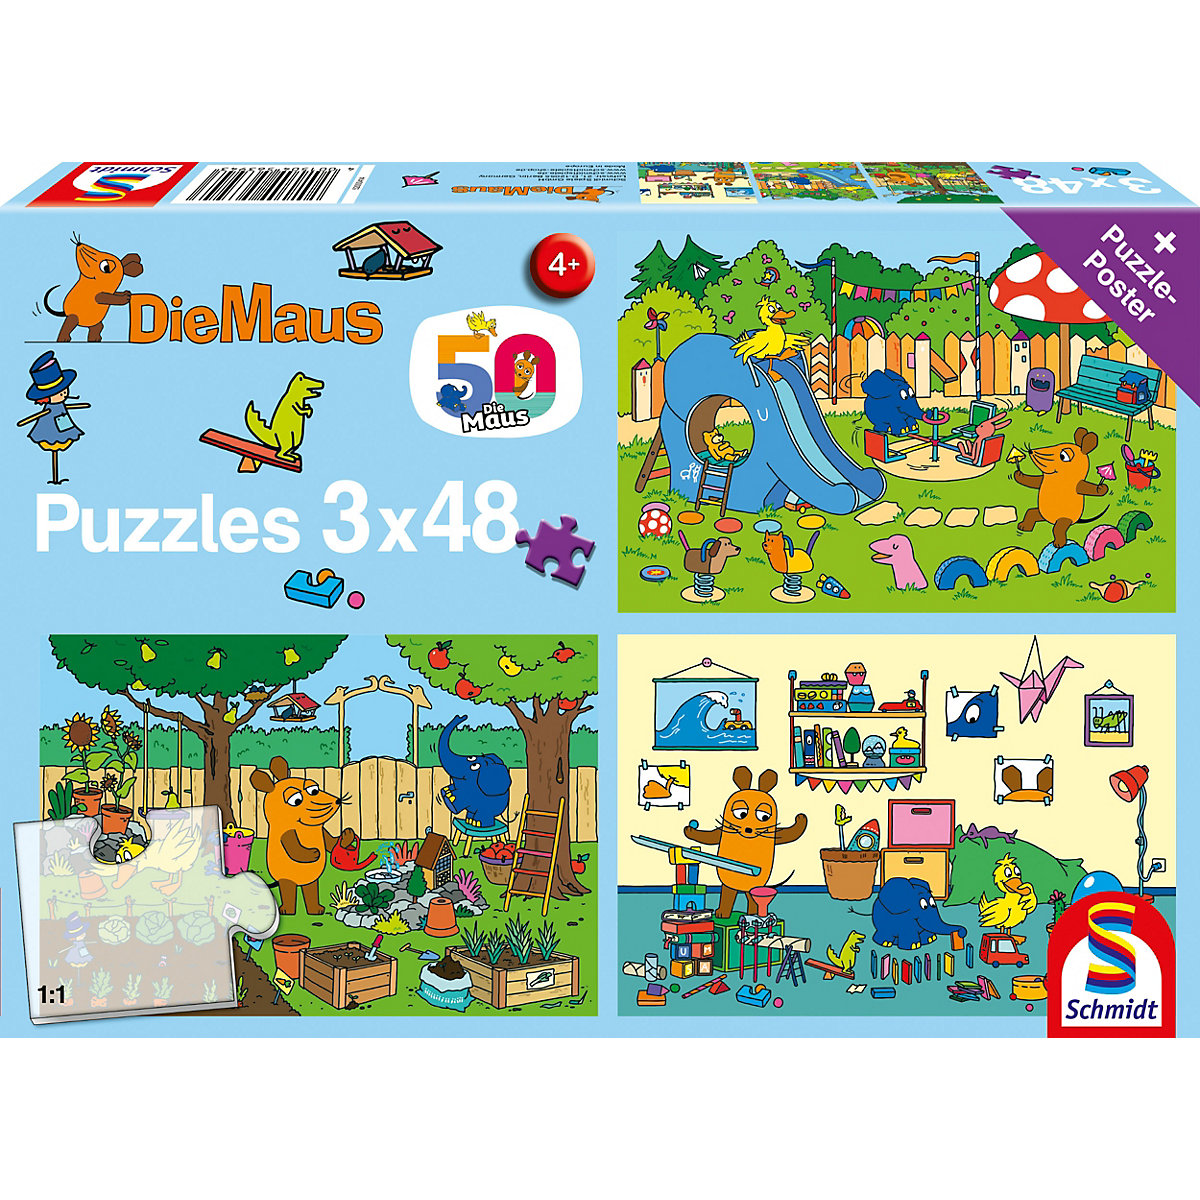 Puzzle Die Maus Ein Tag mit der Maus 3x48 Teile